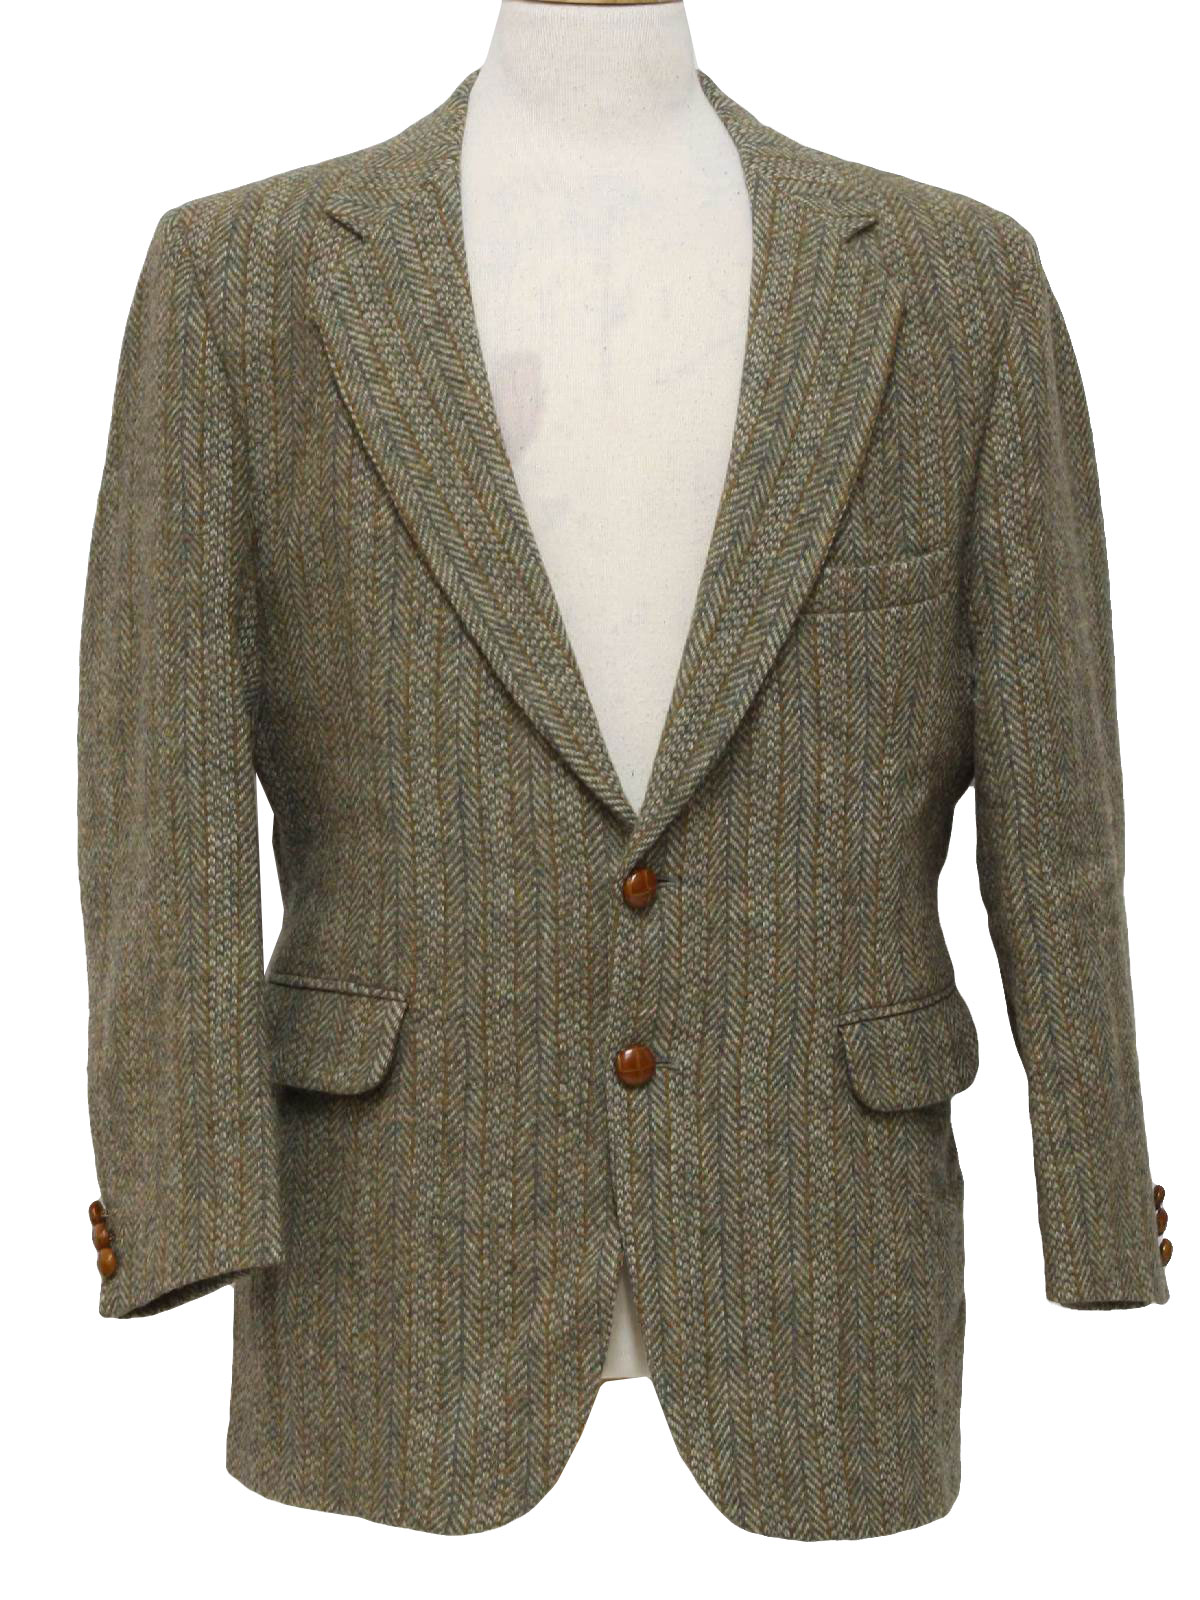 Retro 1970's Jacket (Coat Tails) : 70s -Coat Tails- Mens shaded green ...